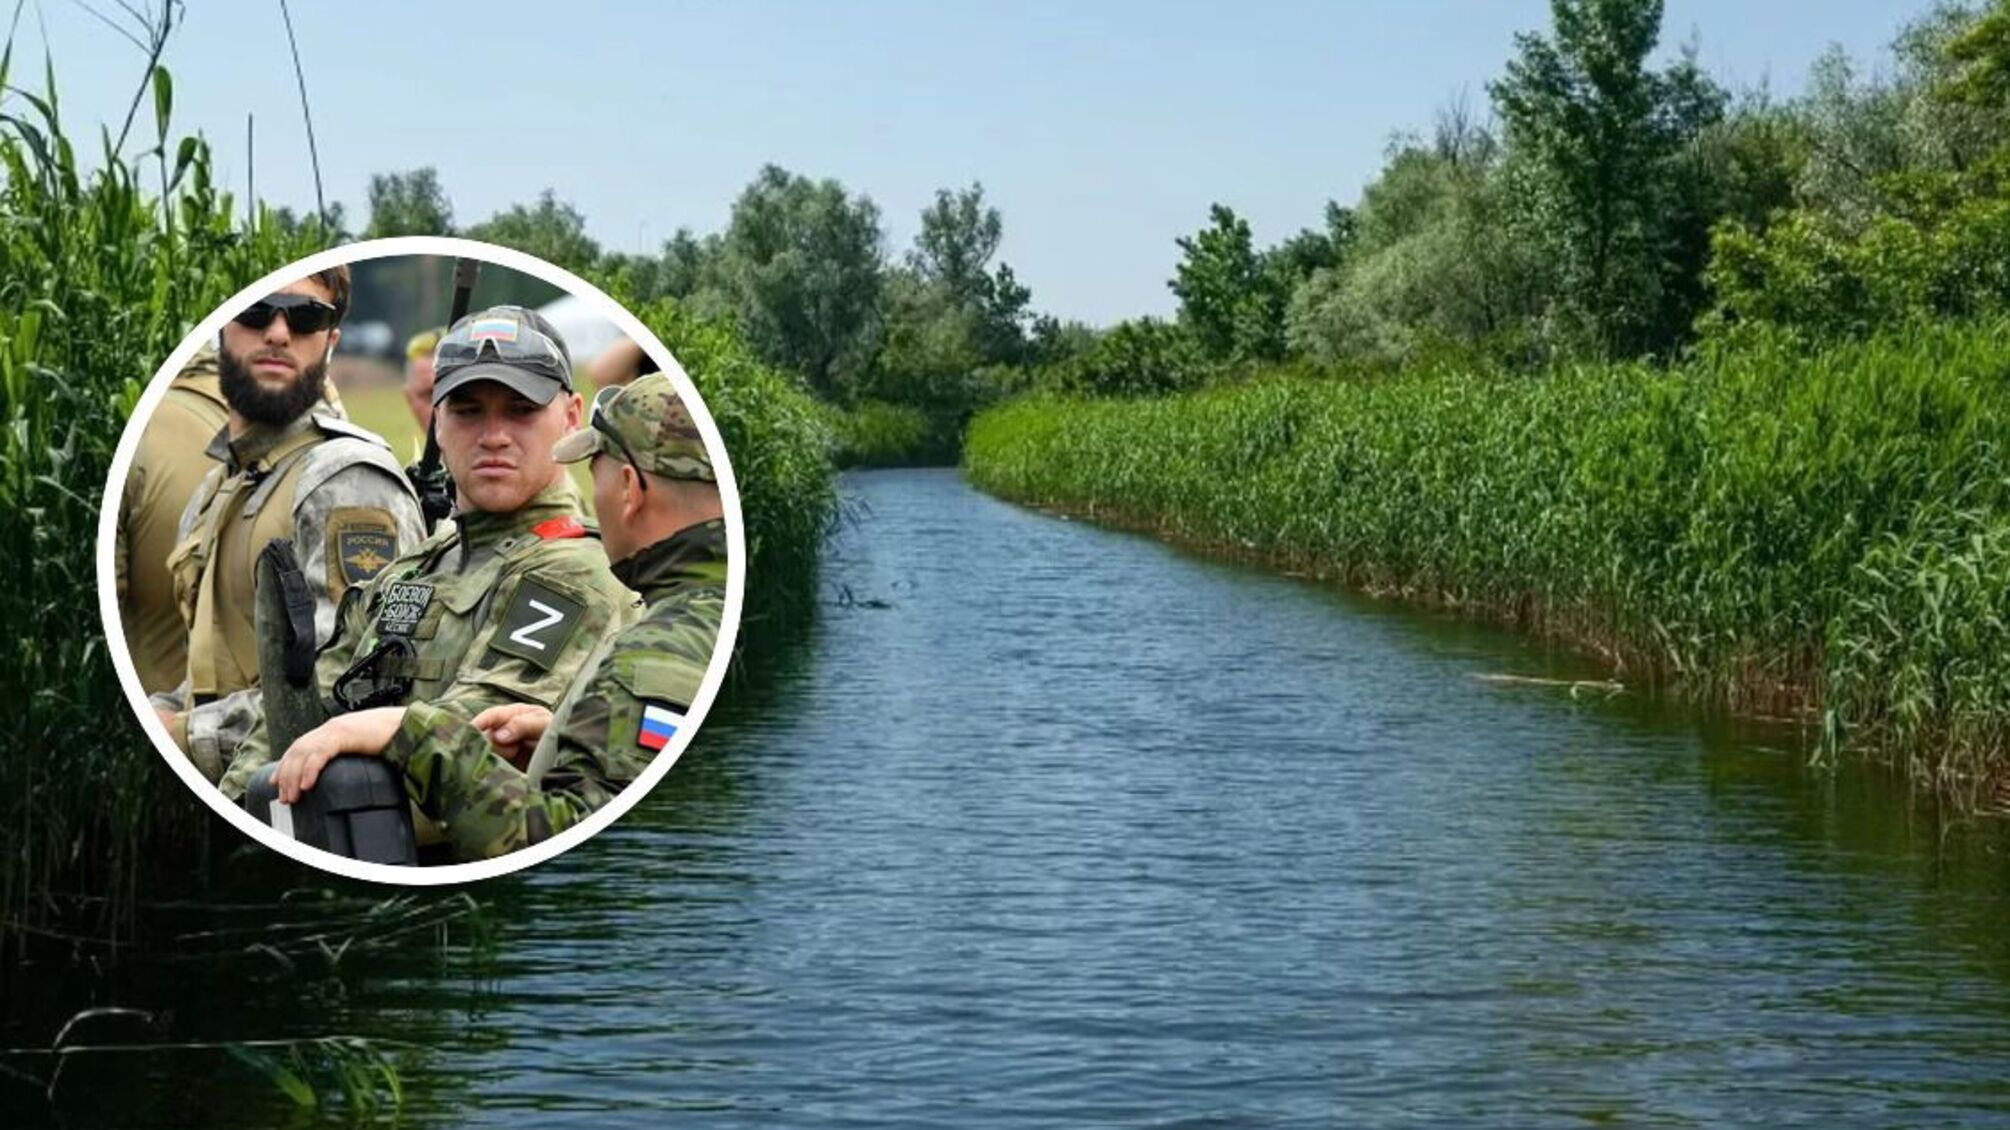 ВСУ провели спецоперацию в плавнях Днепра: обнаружена ДРГ армии рф - ОК 'Юг'